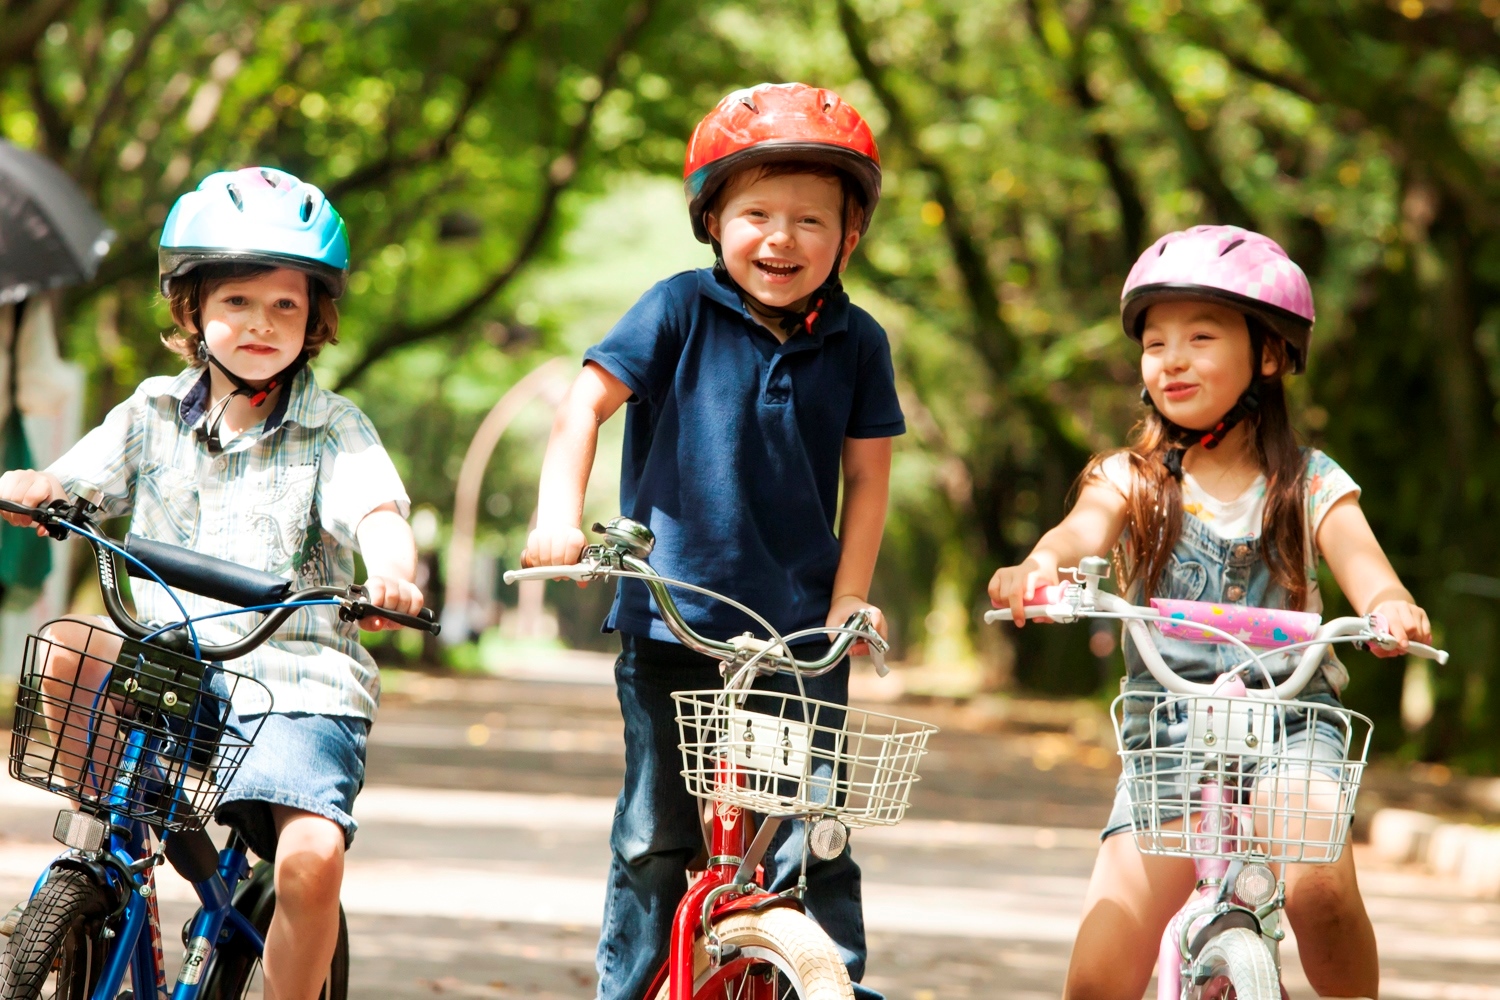 あさひがファミリー キッズ向けサービスの一環として 自転車とともに成長する子供たちの姿 を描く 新ブランドムービーを作成 Ride Together Hearts Together 株式会社あさひのプレスリリース